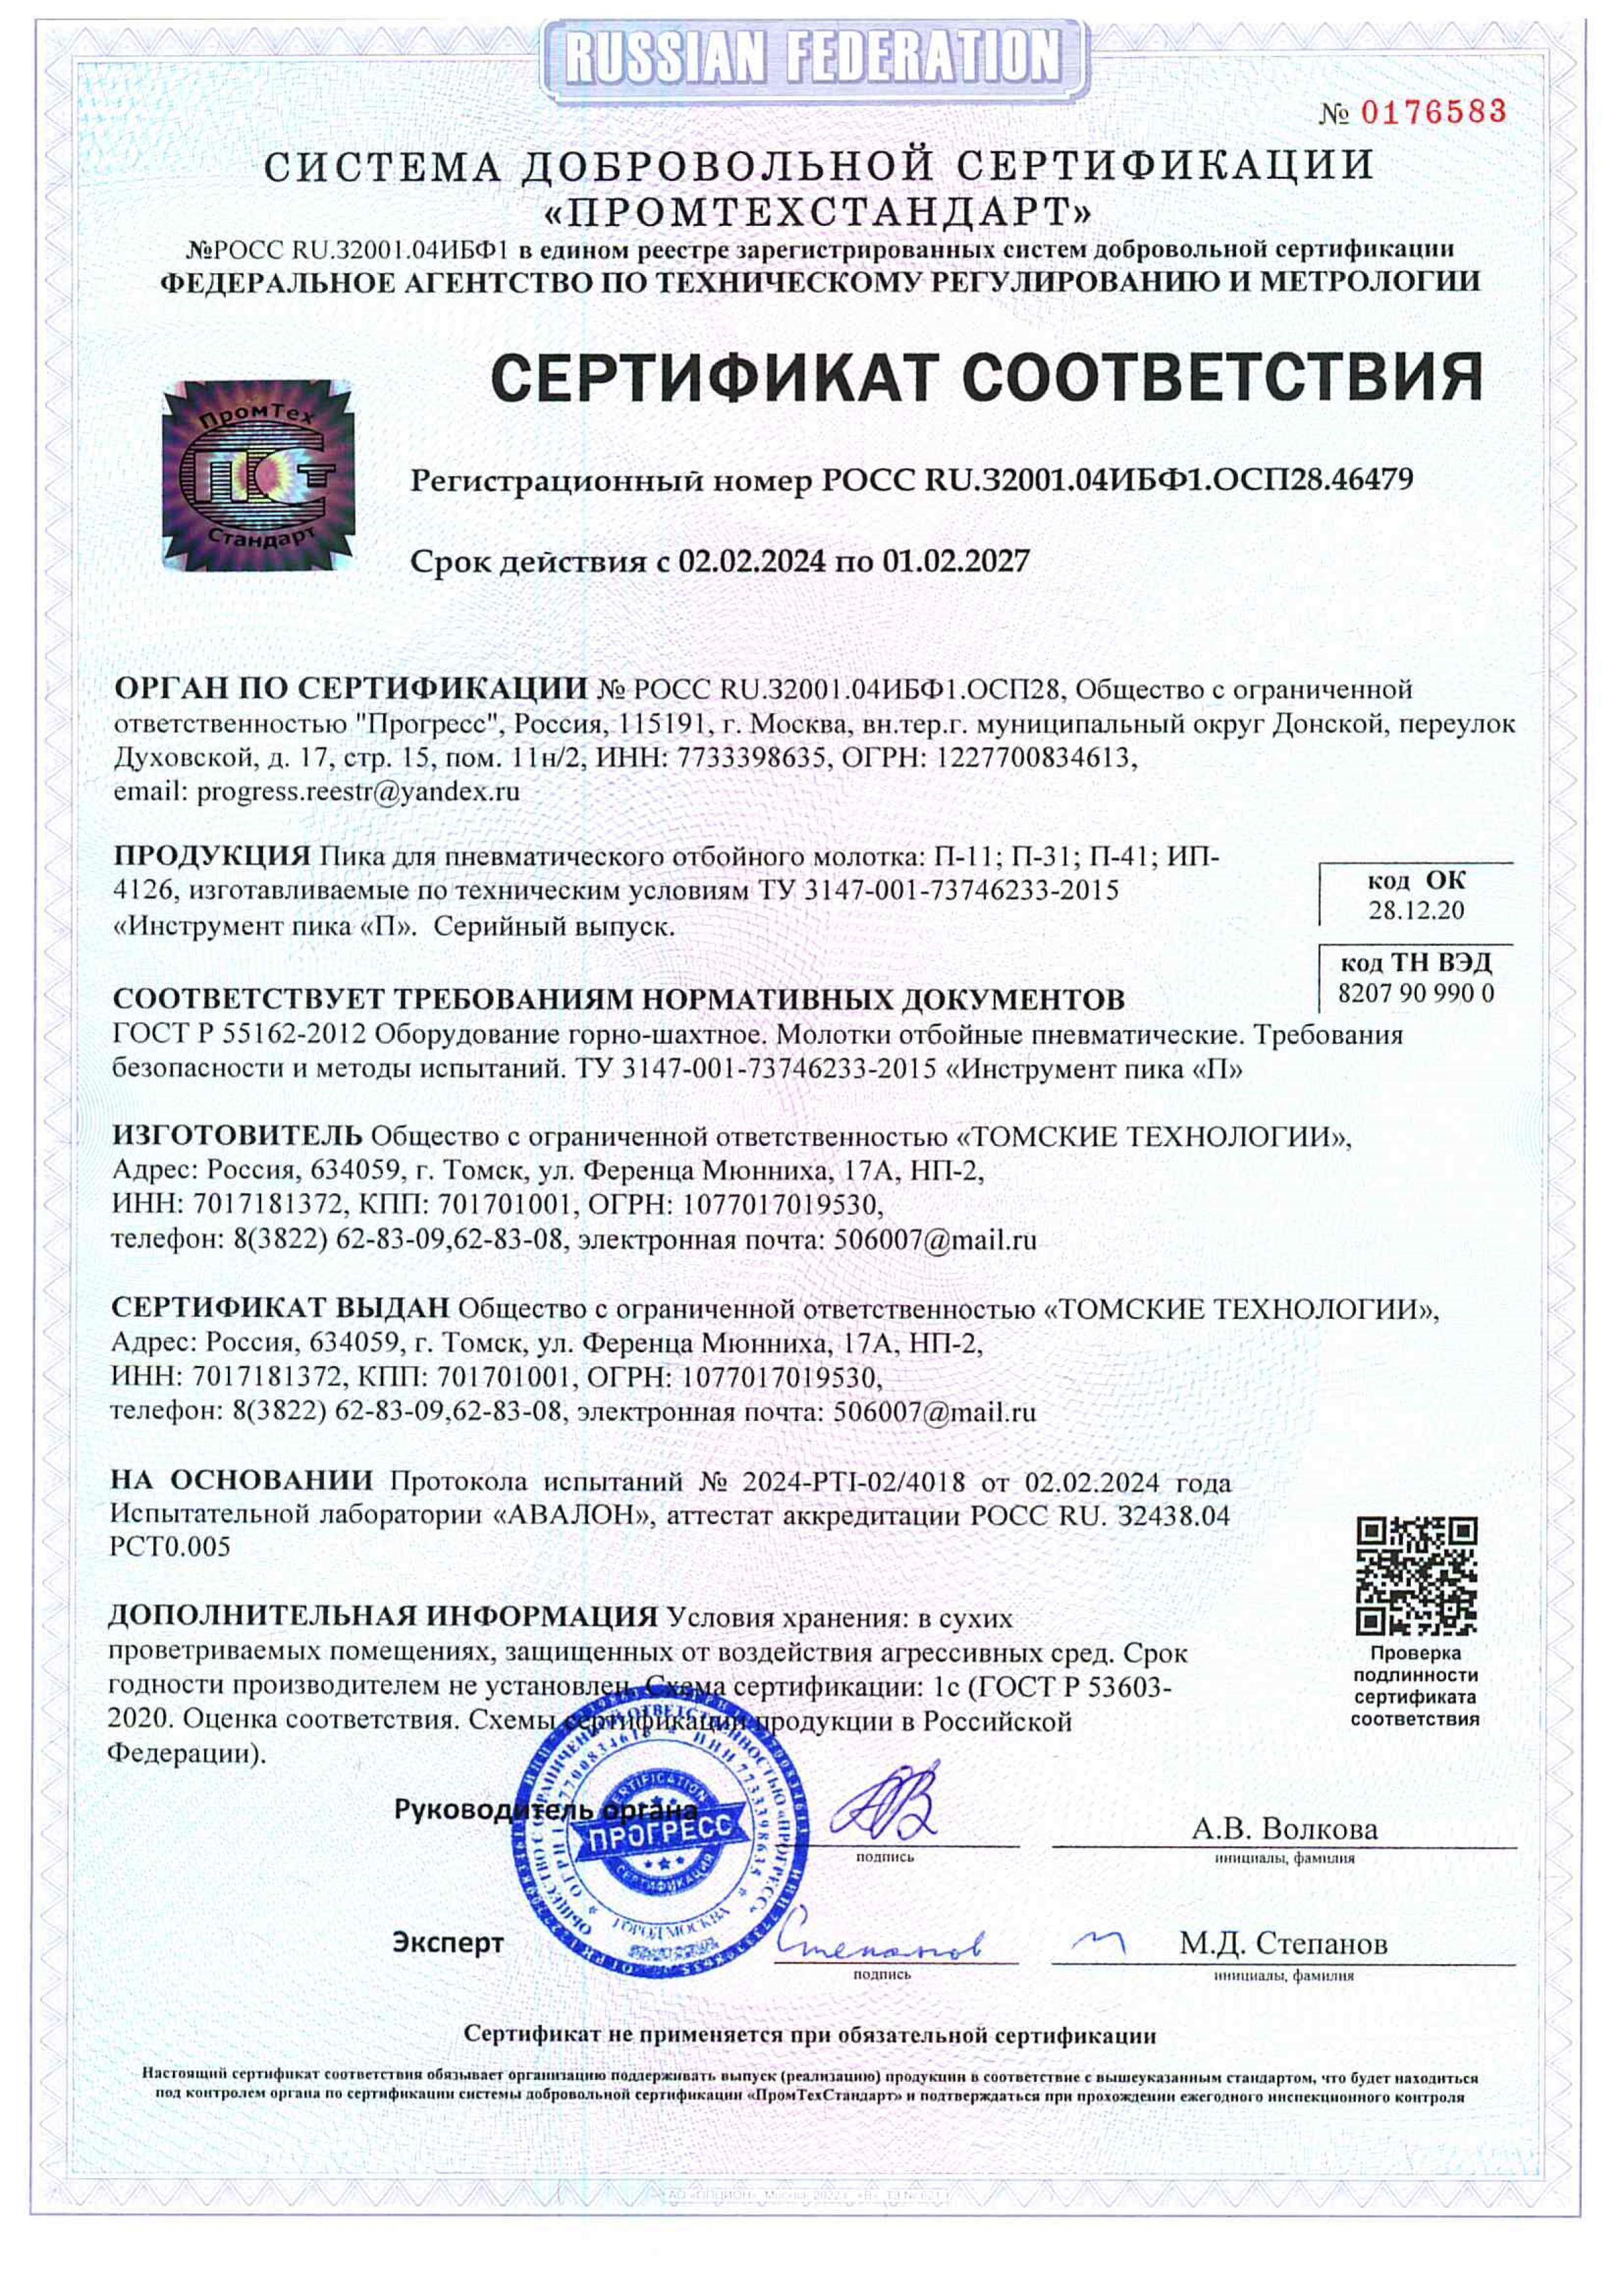 Сертификат на пику П-11, зубило П-31 и лопатку П-41 производства ООО Томские технологии